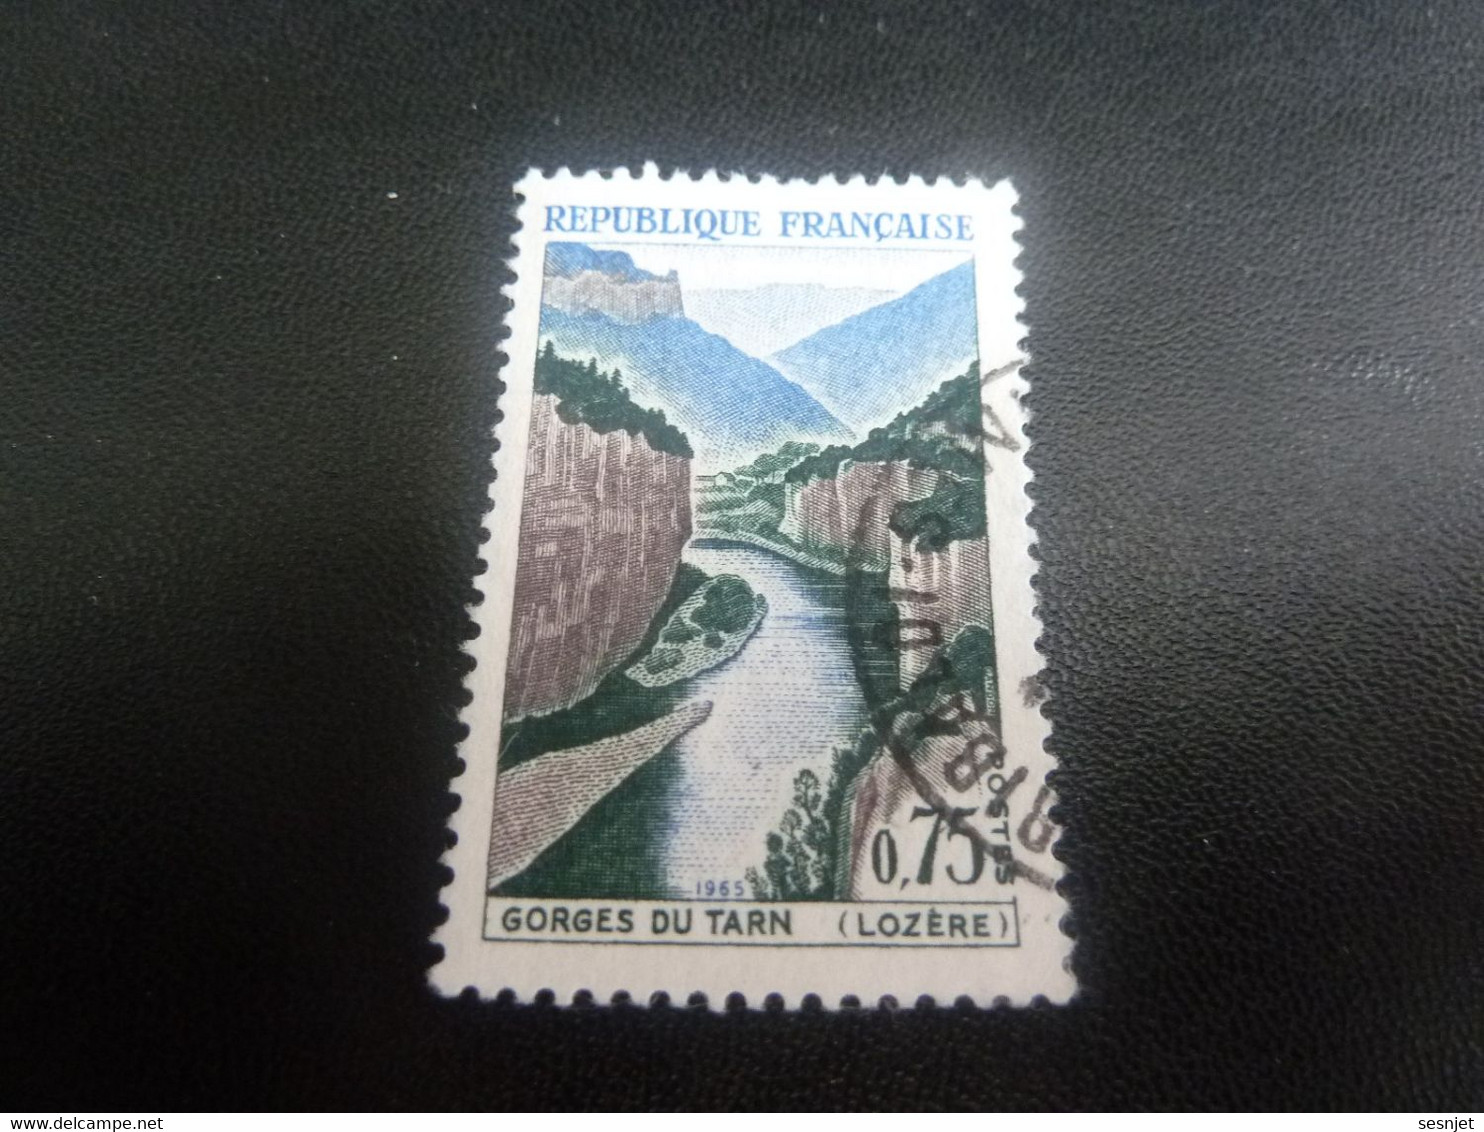 Gorges Du Tarn - Lozère - 75c. - Brun Violacé, Bleu Et Vert - Oblitéré - Année 1965 - - Used Stamps